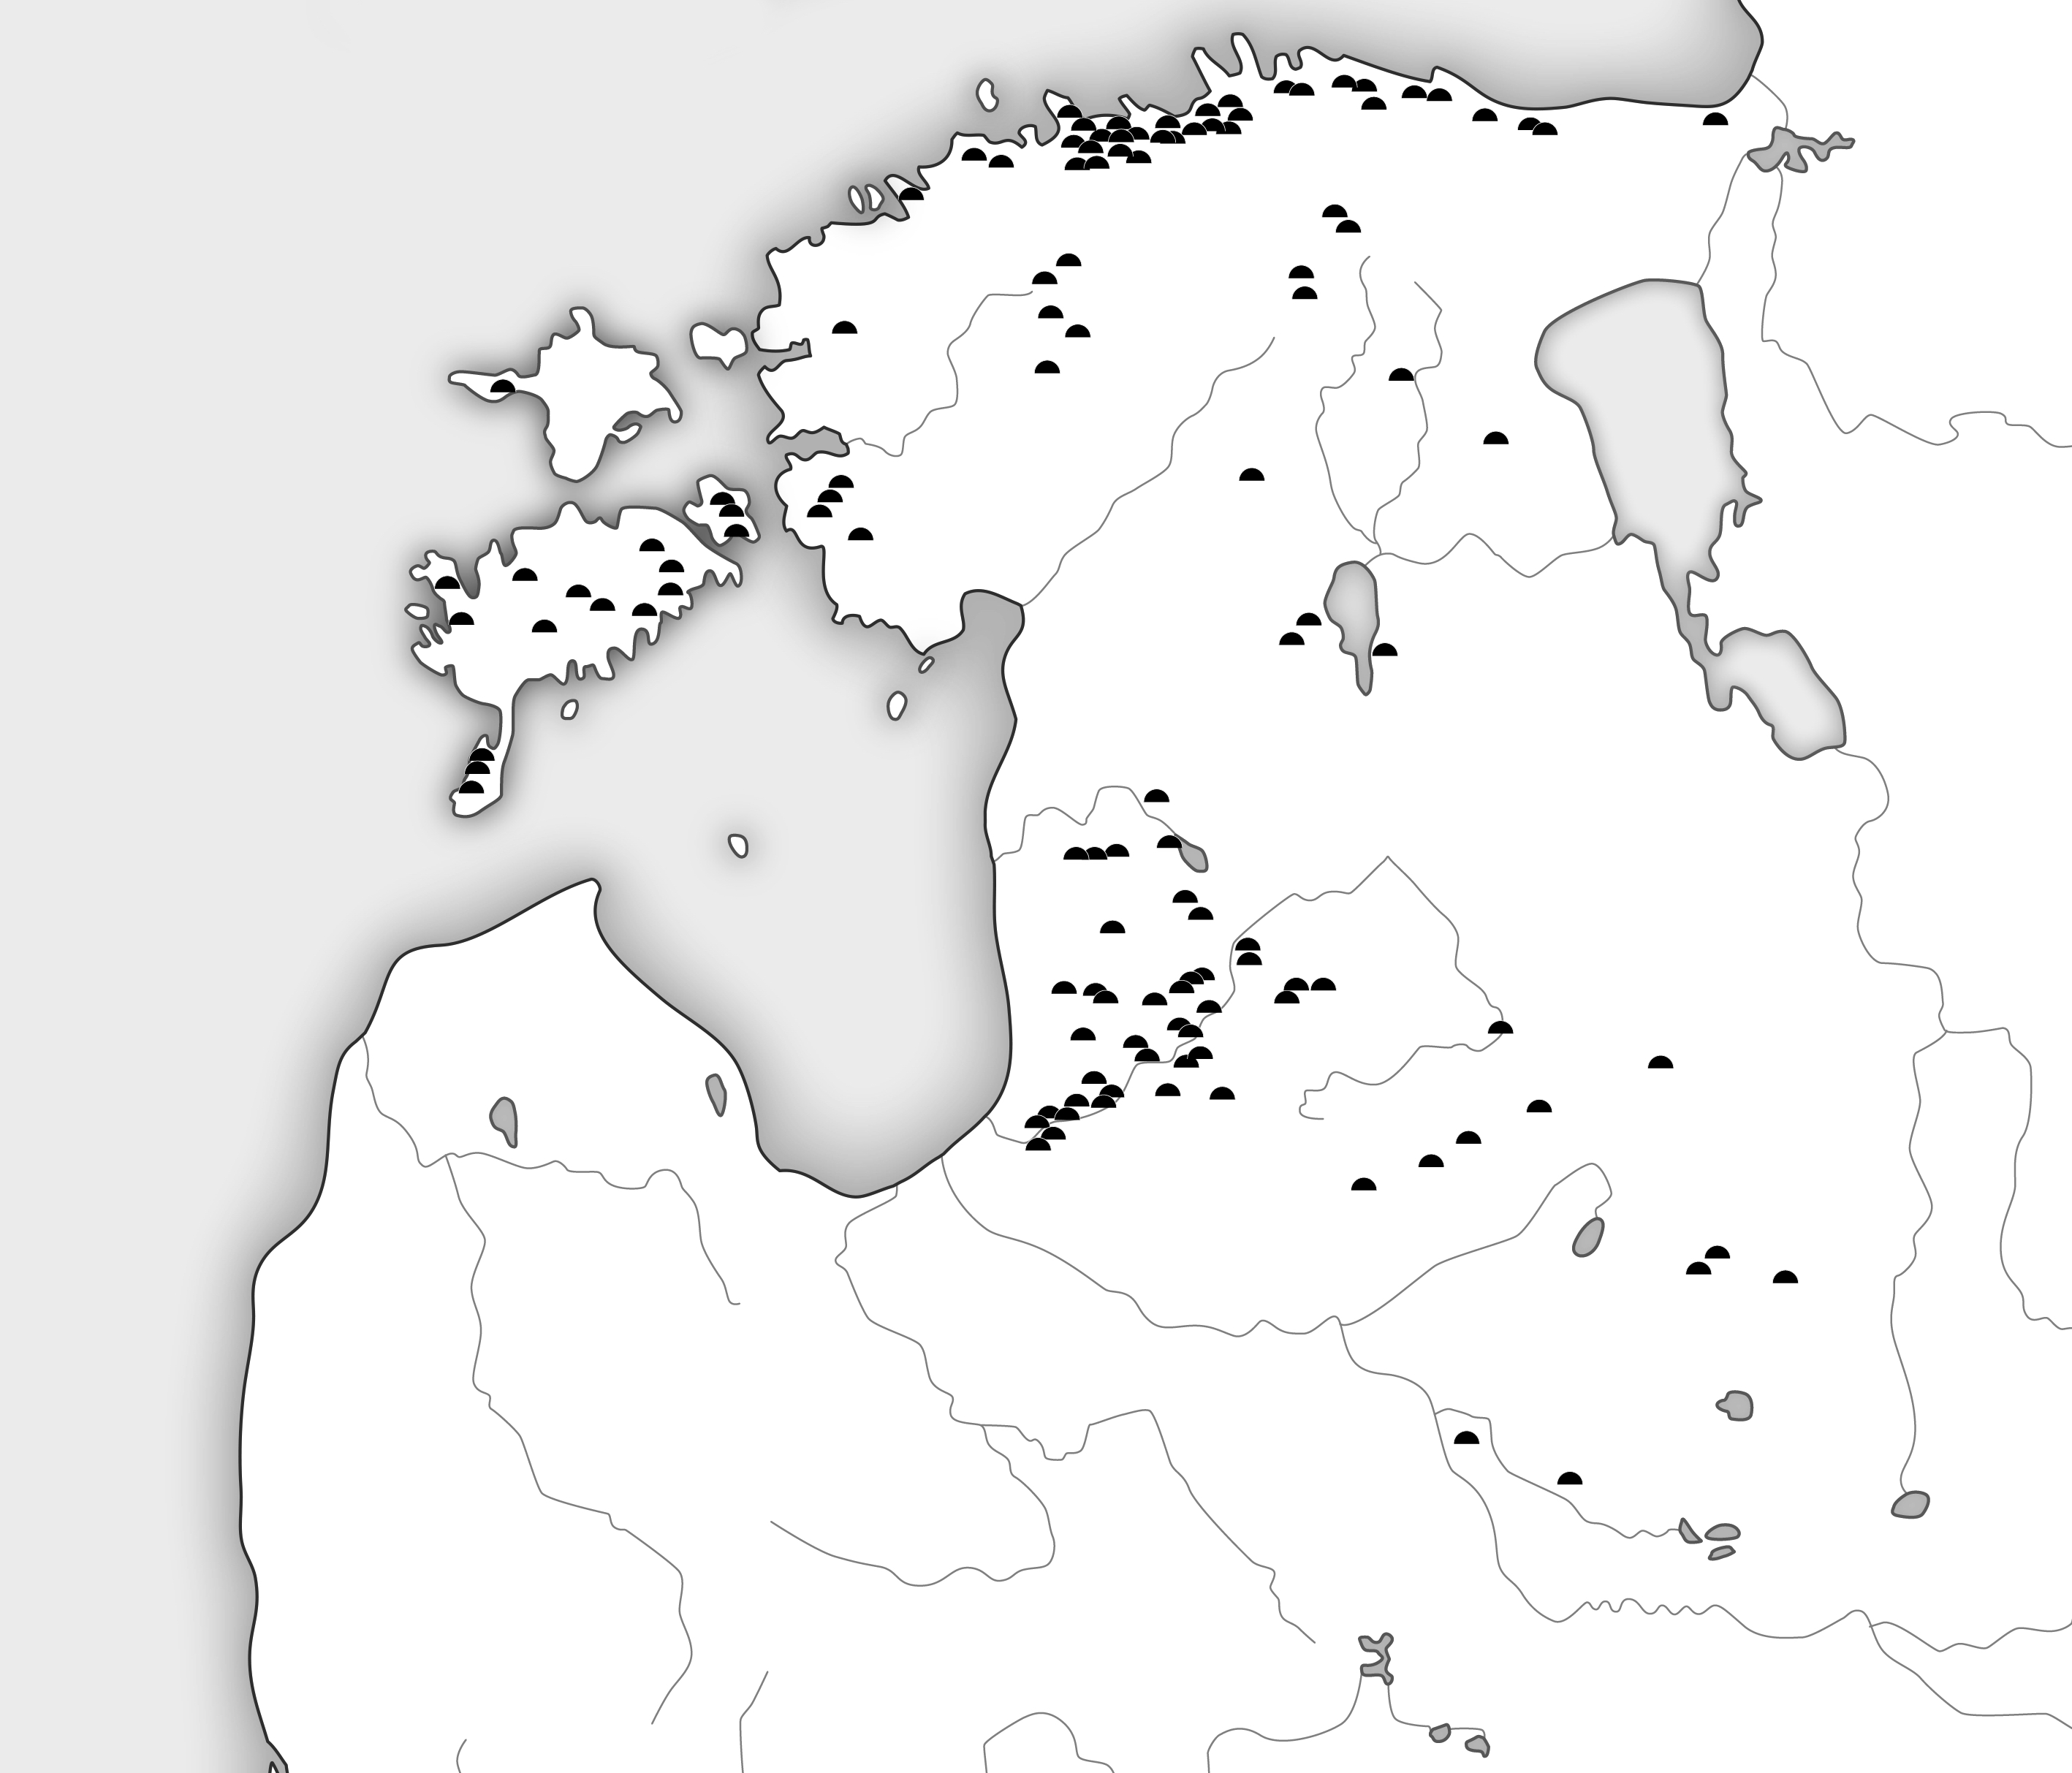 Kaardil märgitud kivikirstkalmete leiukohad Eesti ja Läti aladel – paiknevad eelkõige Põhja-Eesti ranniku lähedal, Lääne-Eesti rannikul (Lihula ümbruses), Saaremaal. Lätis leidub kivikirstkalmeid enim läänerannikul, Koiva ja Salatsi jõe vahelisel alal. 